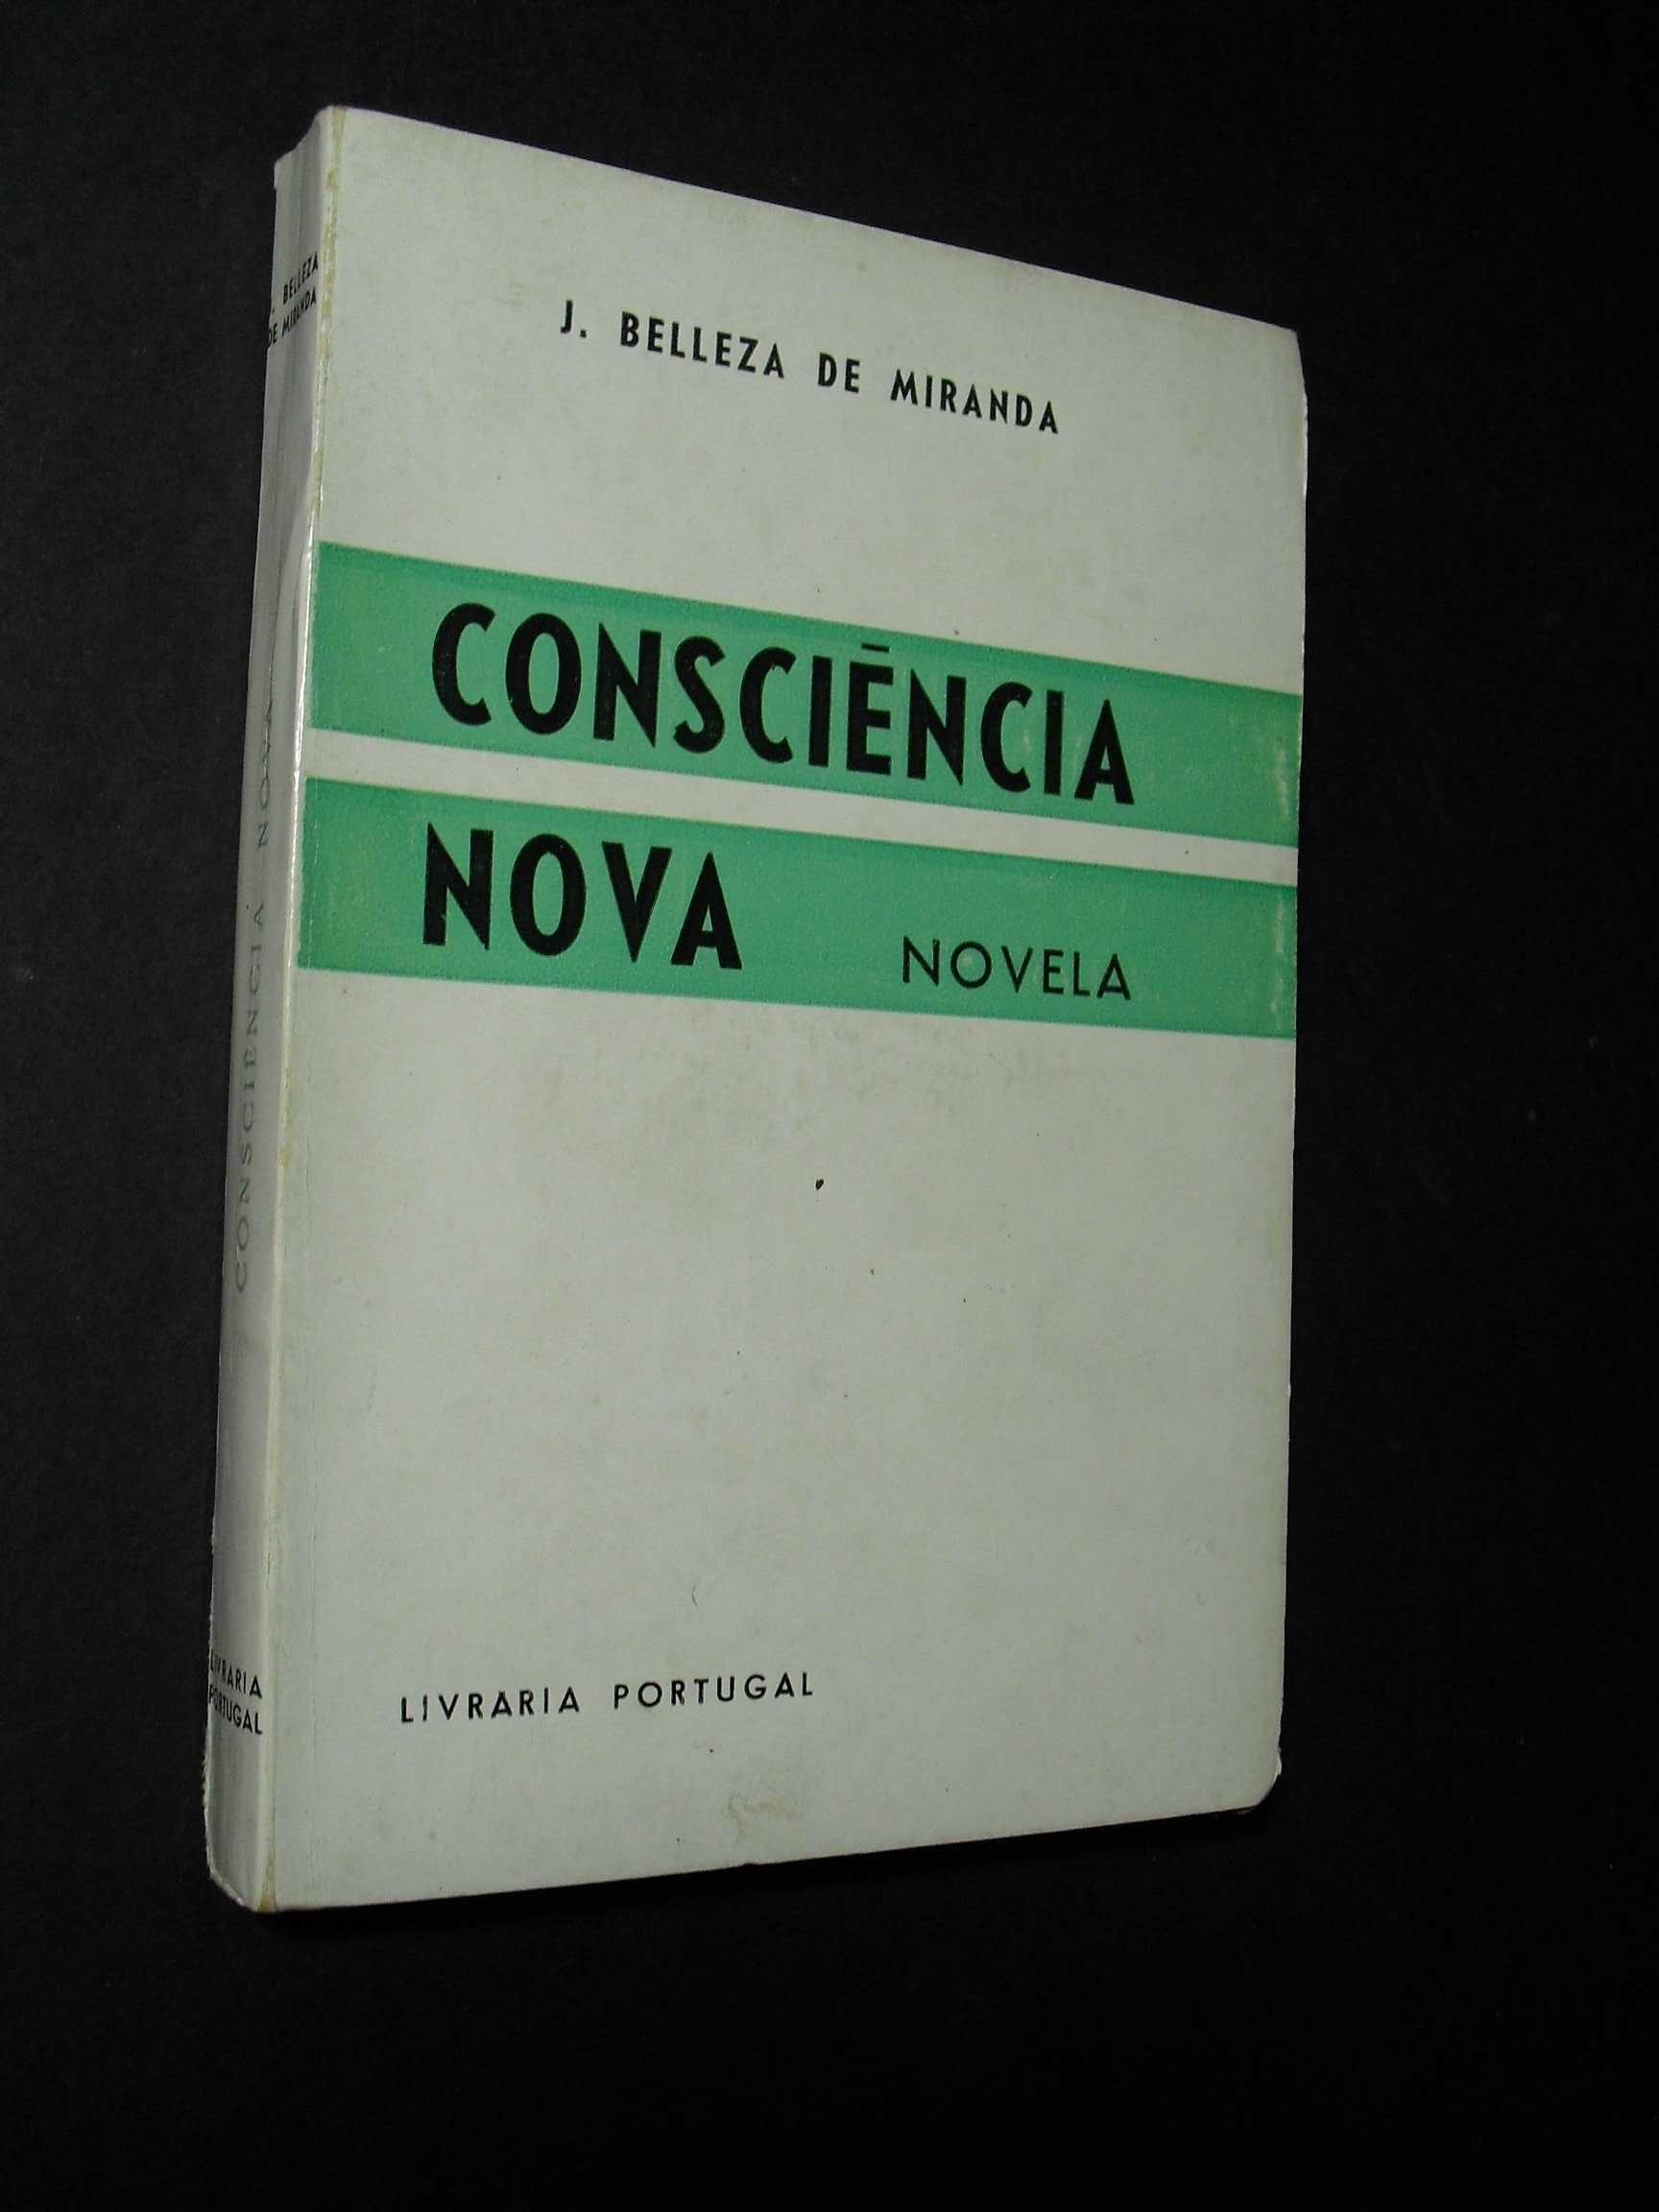 Miranda (J.Belleza de);Consciência Nova,Novelas